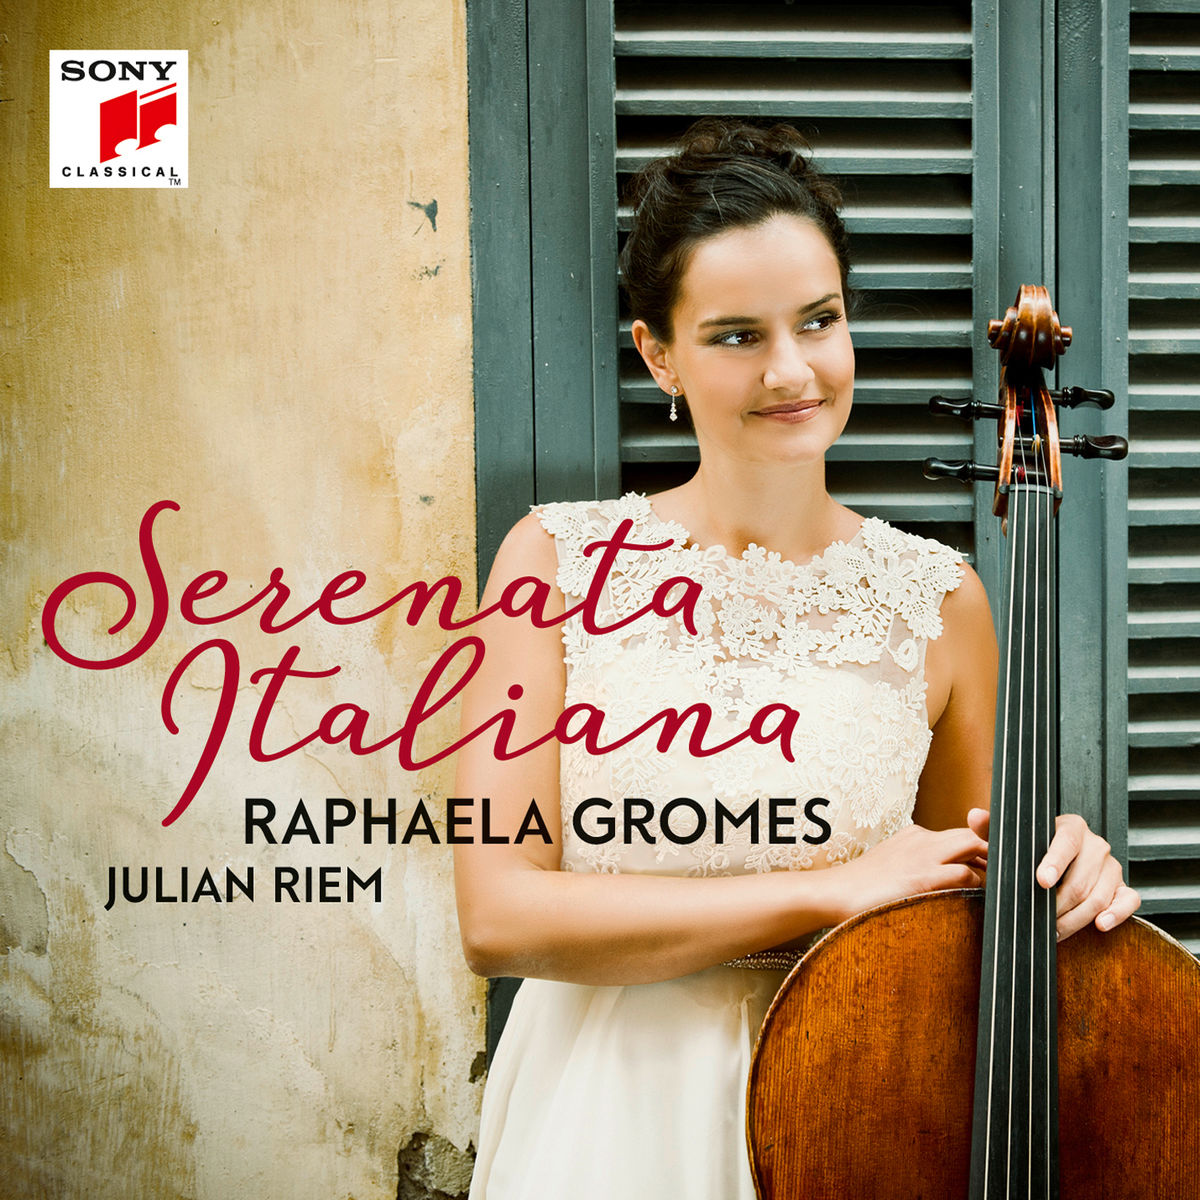 Raphaela Gromes - Serenata Italiana (2017) [Qobuz FLAC 24bit/96kHz]